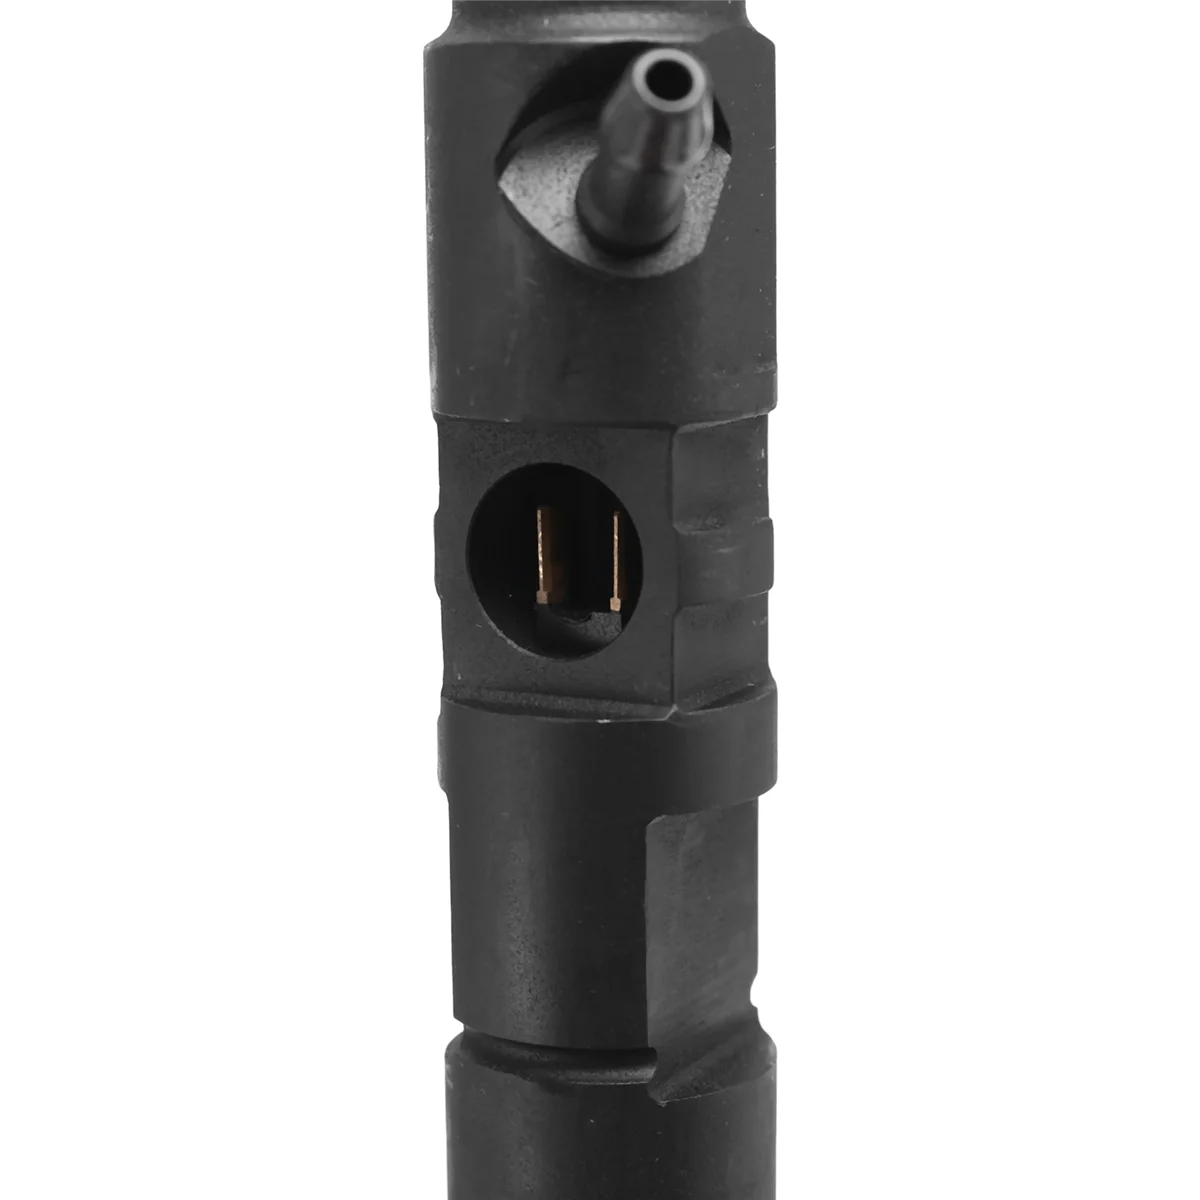 EJBR05701D EJBR04301D New Diesel Fuel Injector Nozzle for Tata 1.4 L Dicor Marina, Indica , Indigo images - 6